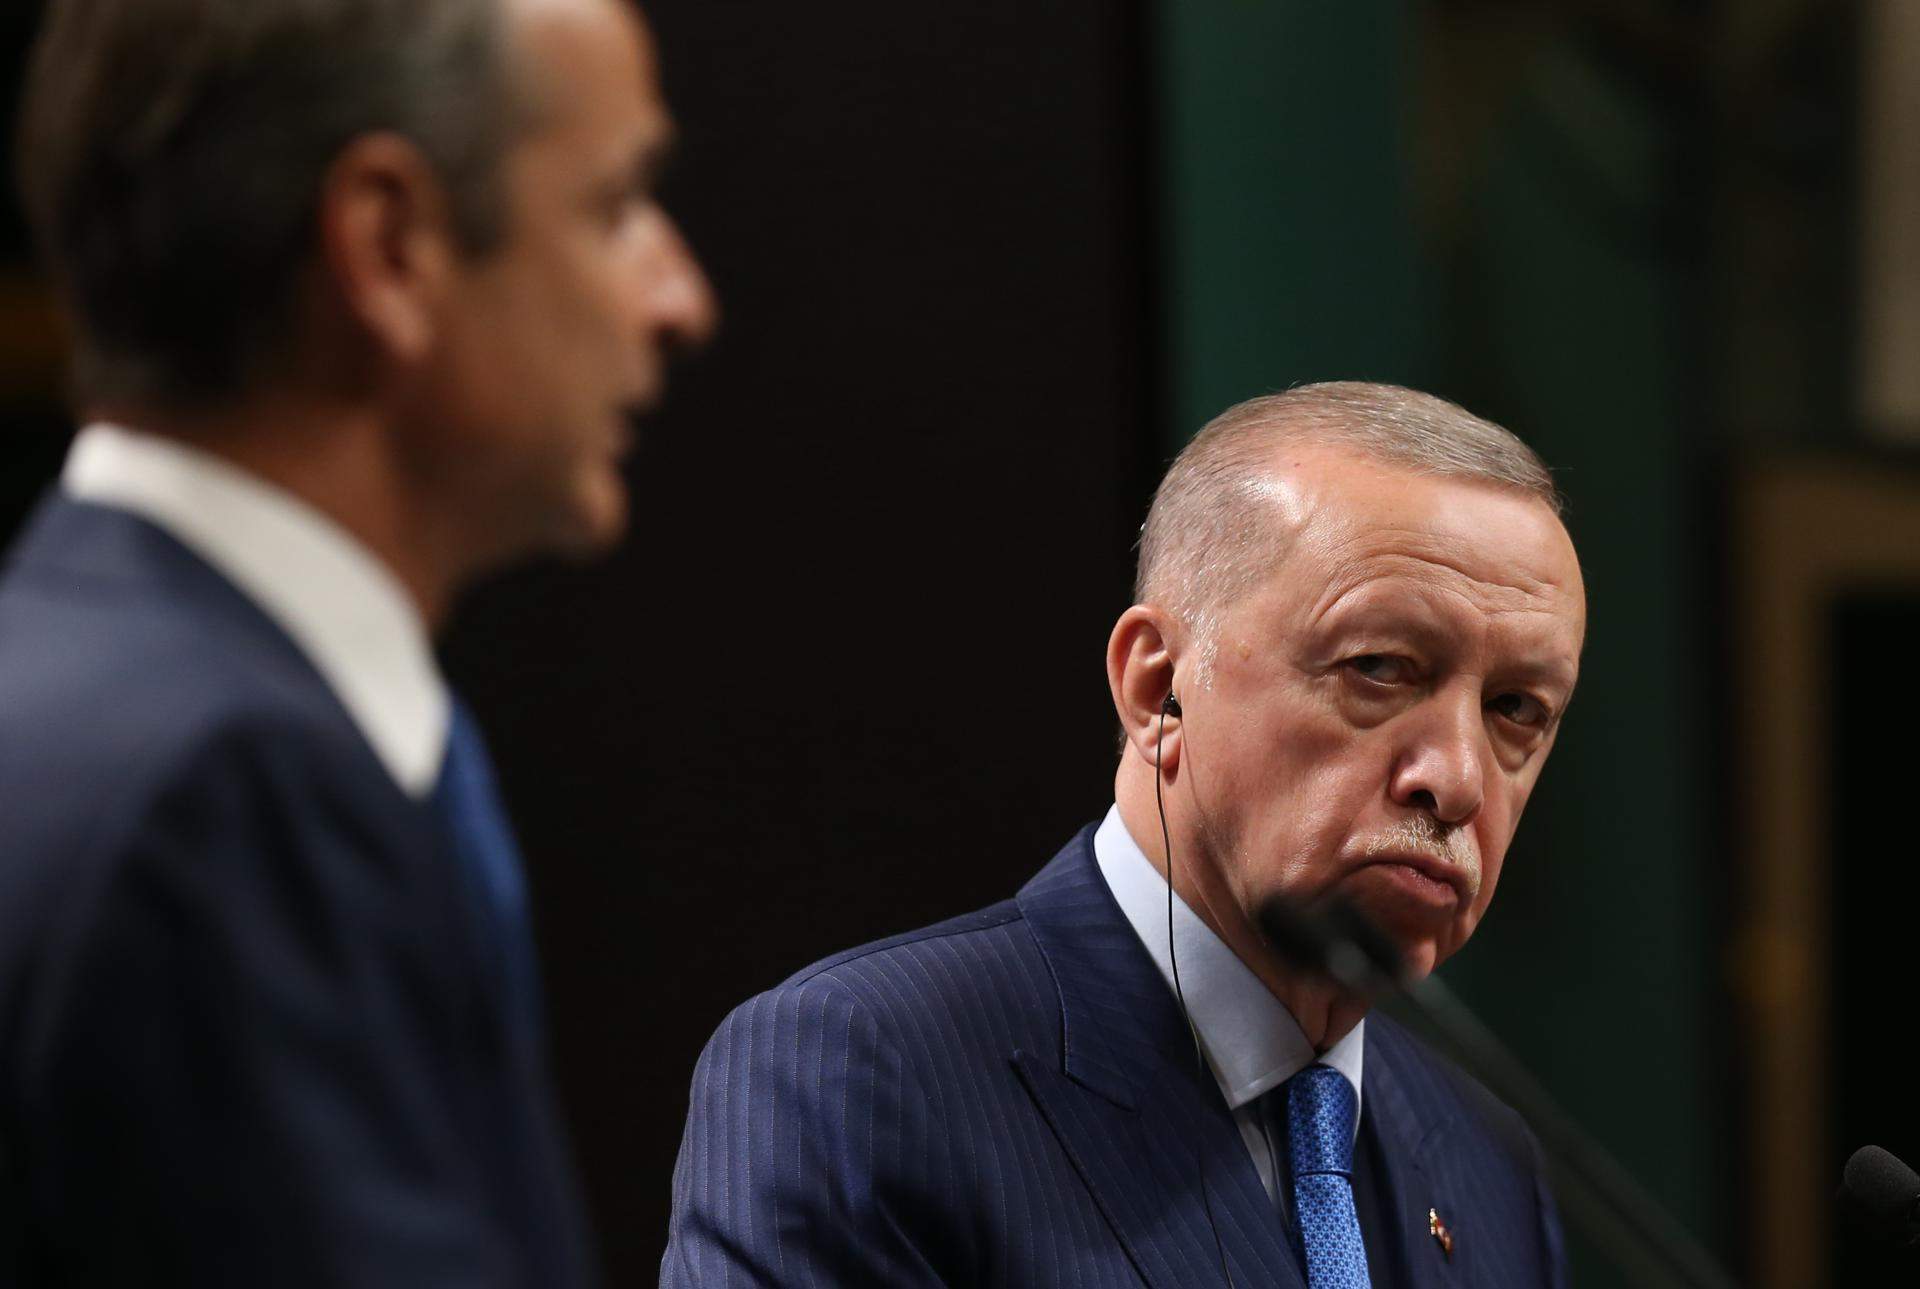 Polèmica per les paraules d'Erdoğan sobre Eurovisió: "Amenaça a la família"